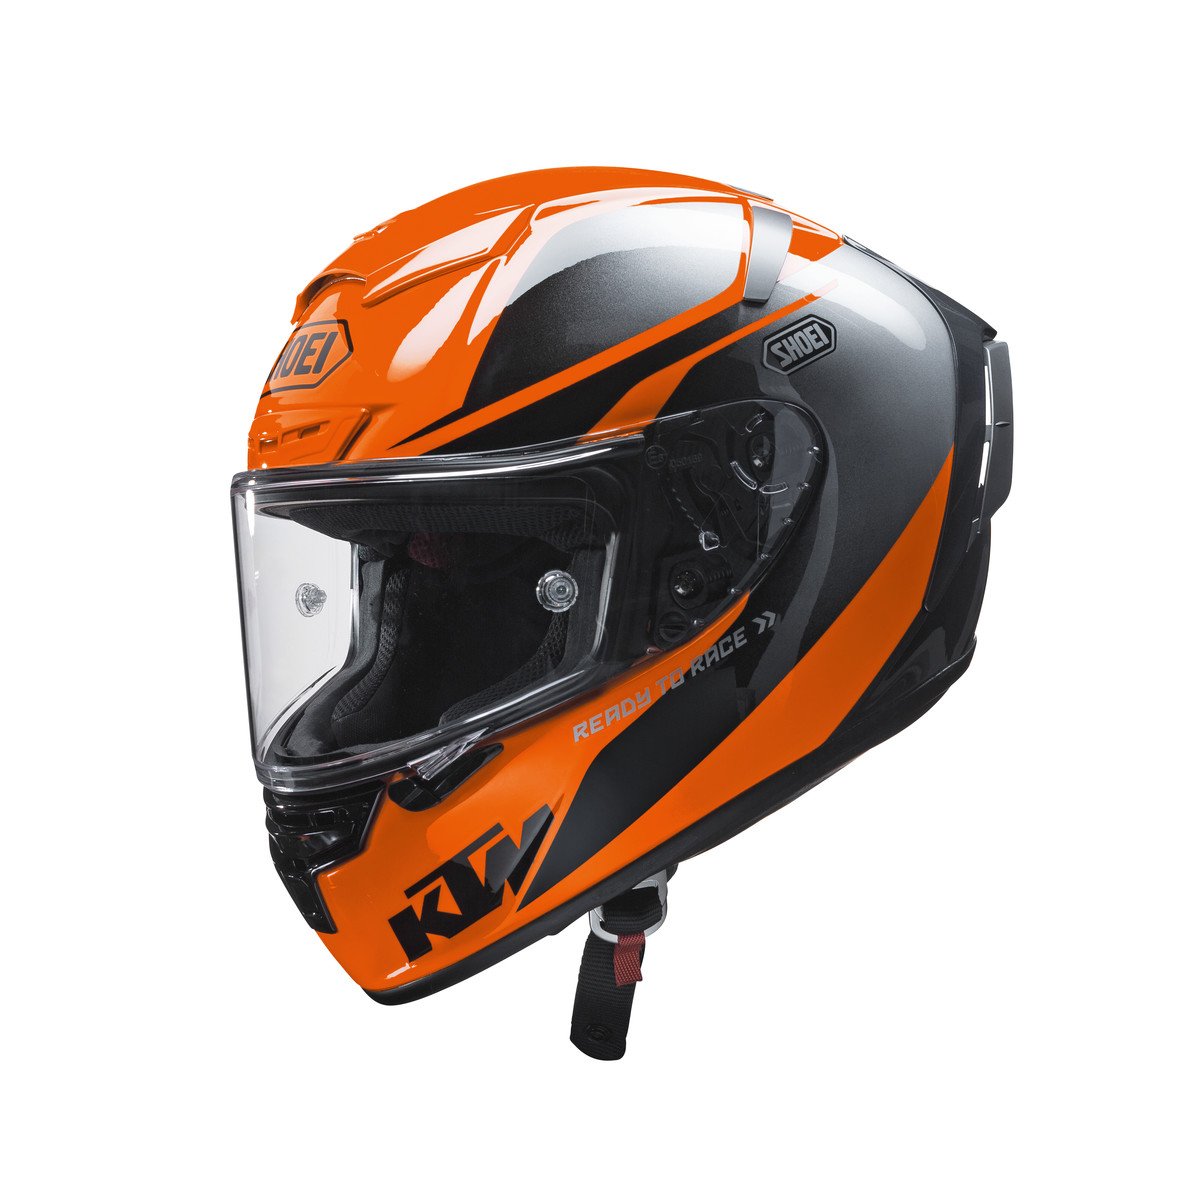 Main image of 2018 KTM X-Fourteen Helmet by Shoei